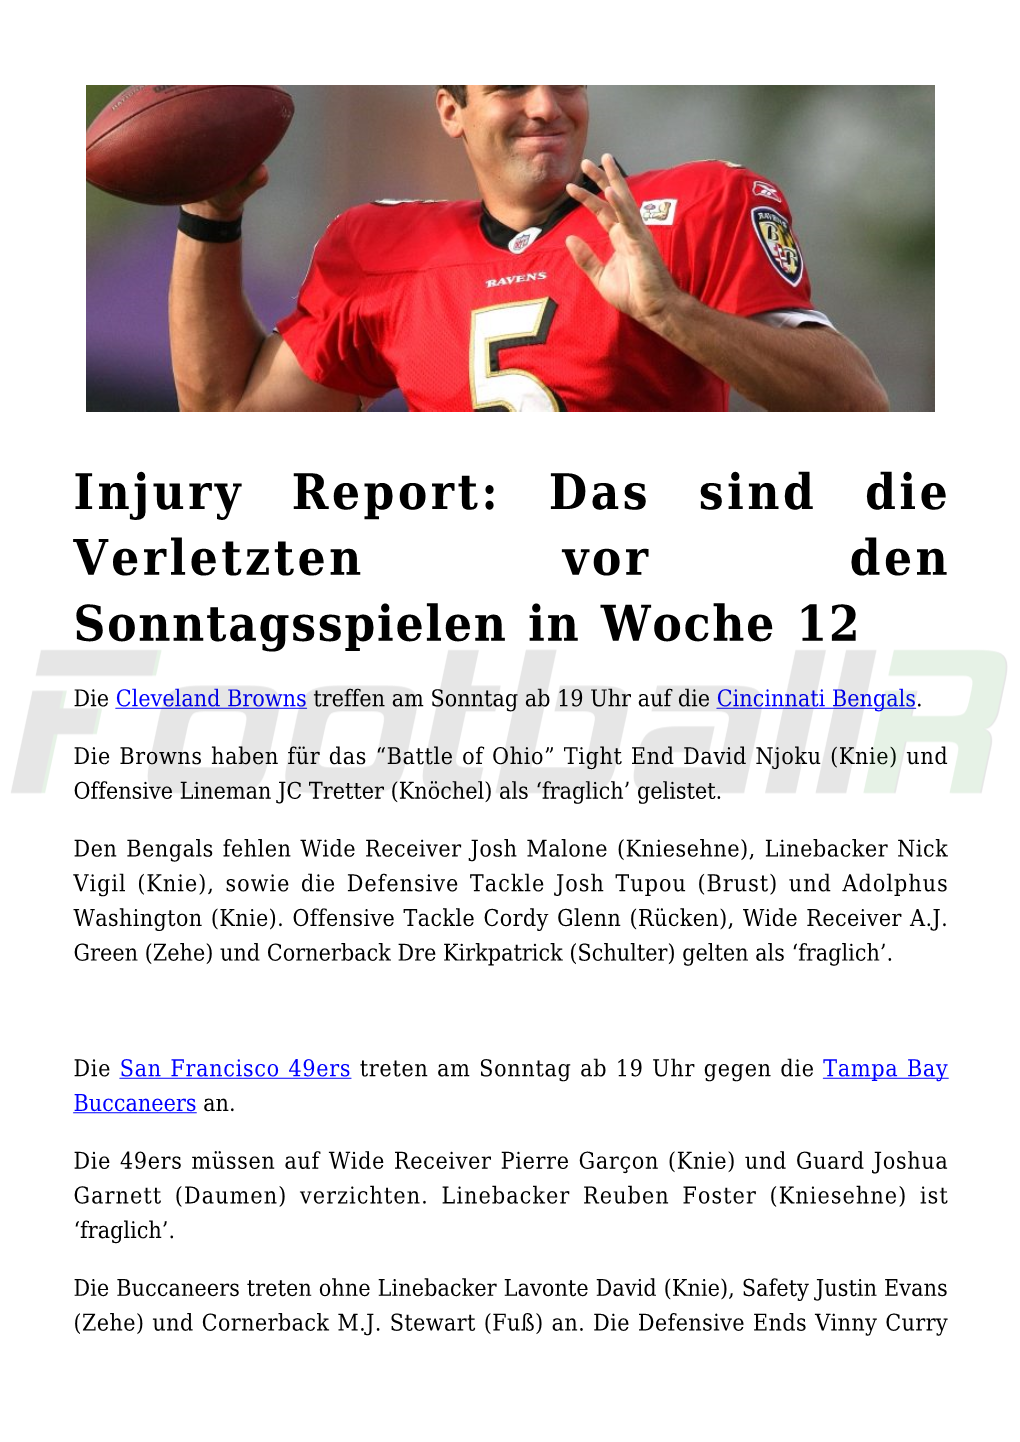 Injury Report: Das Sind Die Verletzten Vor Den Sonntagsspielen in Woche 12